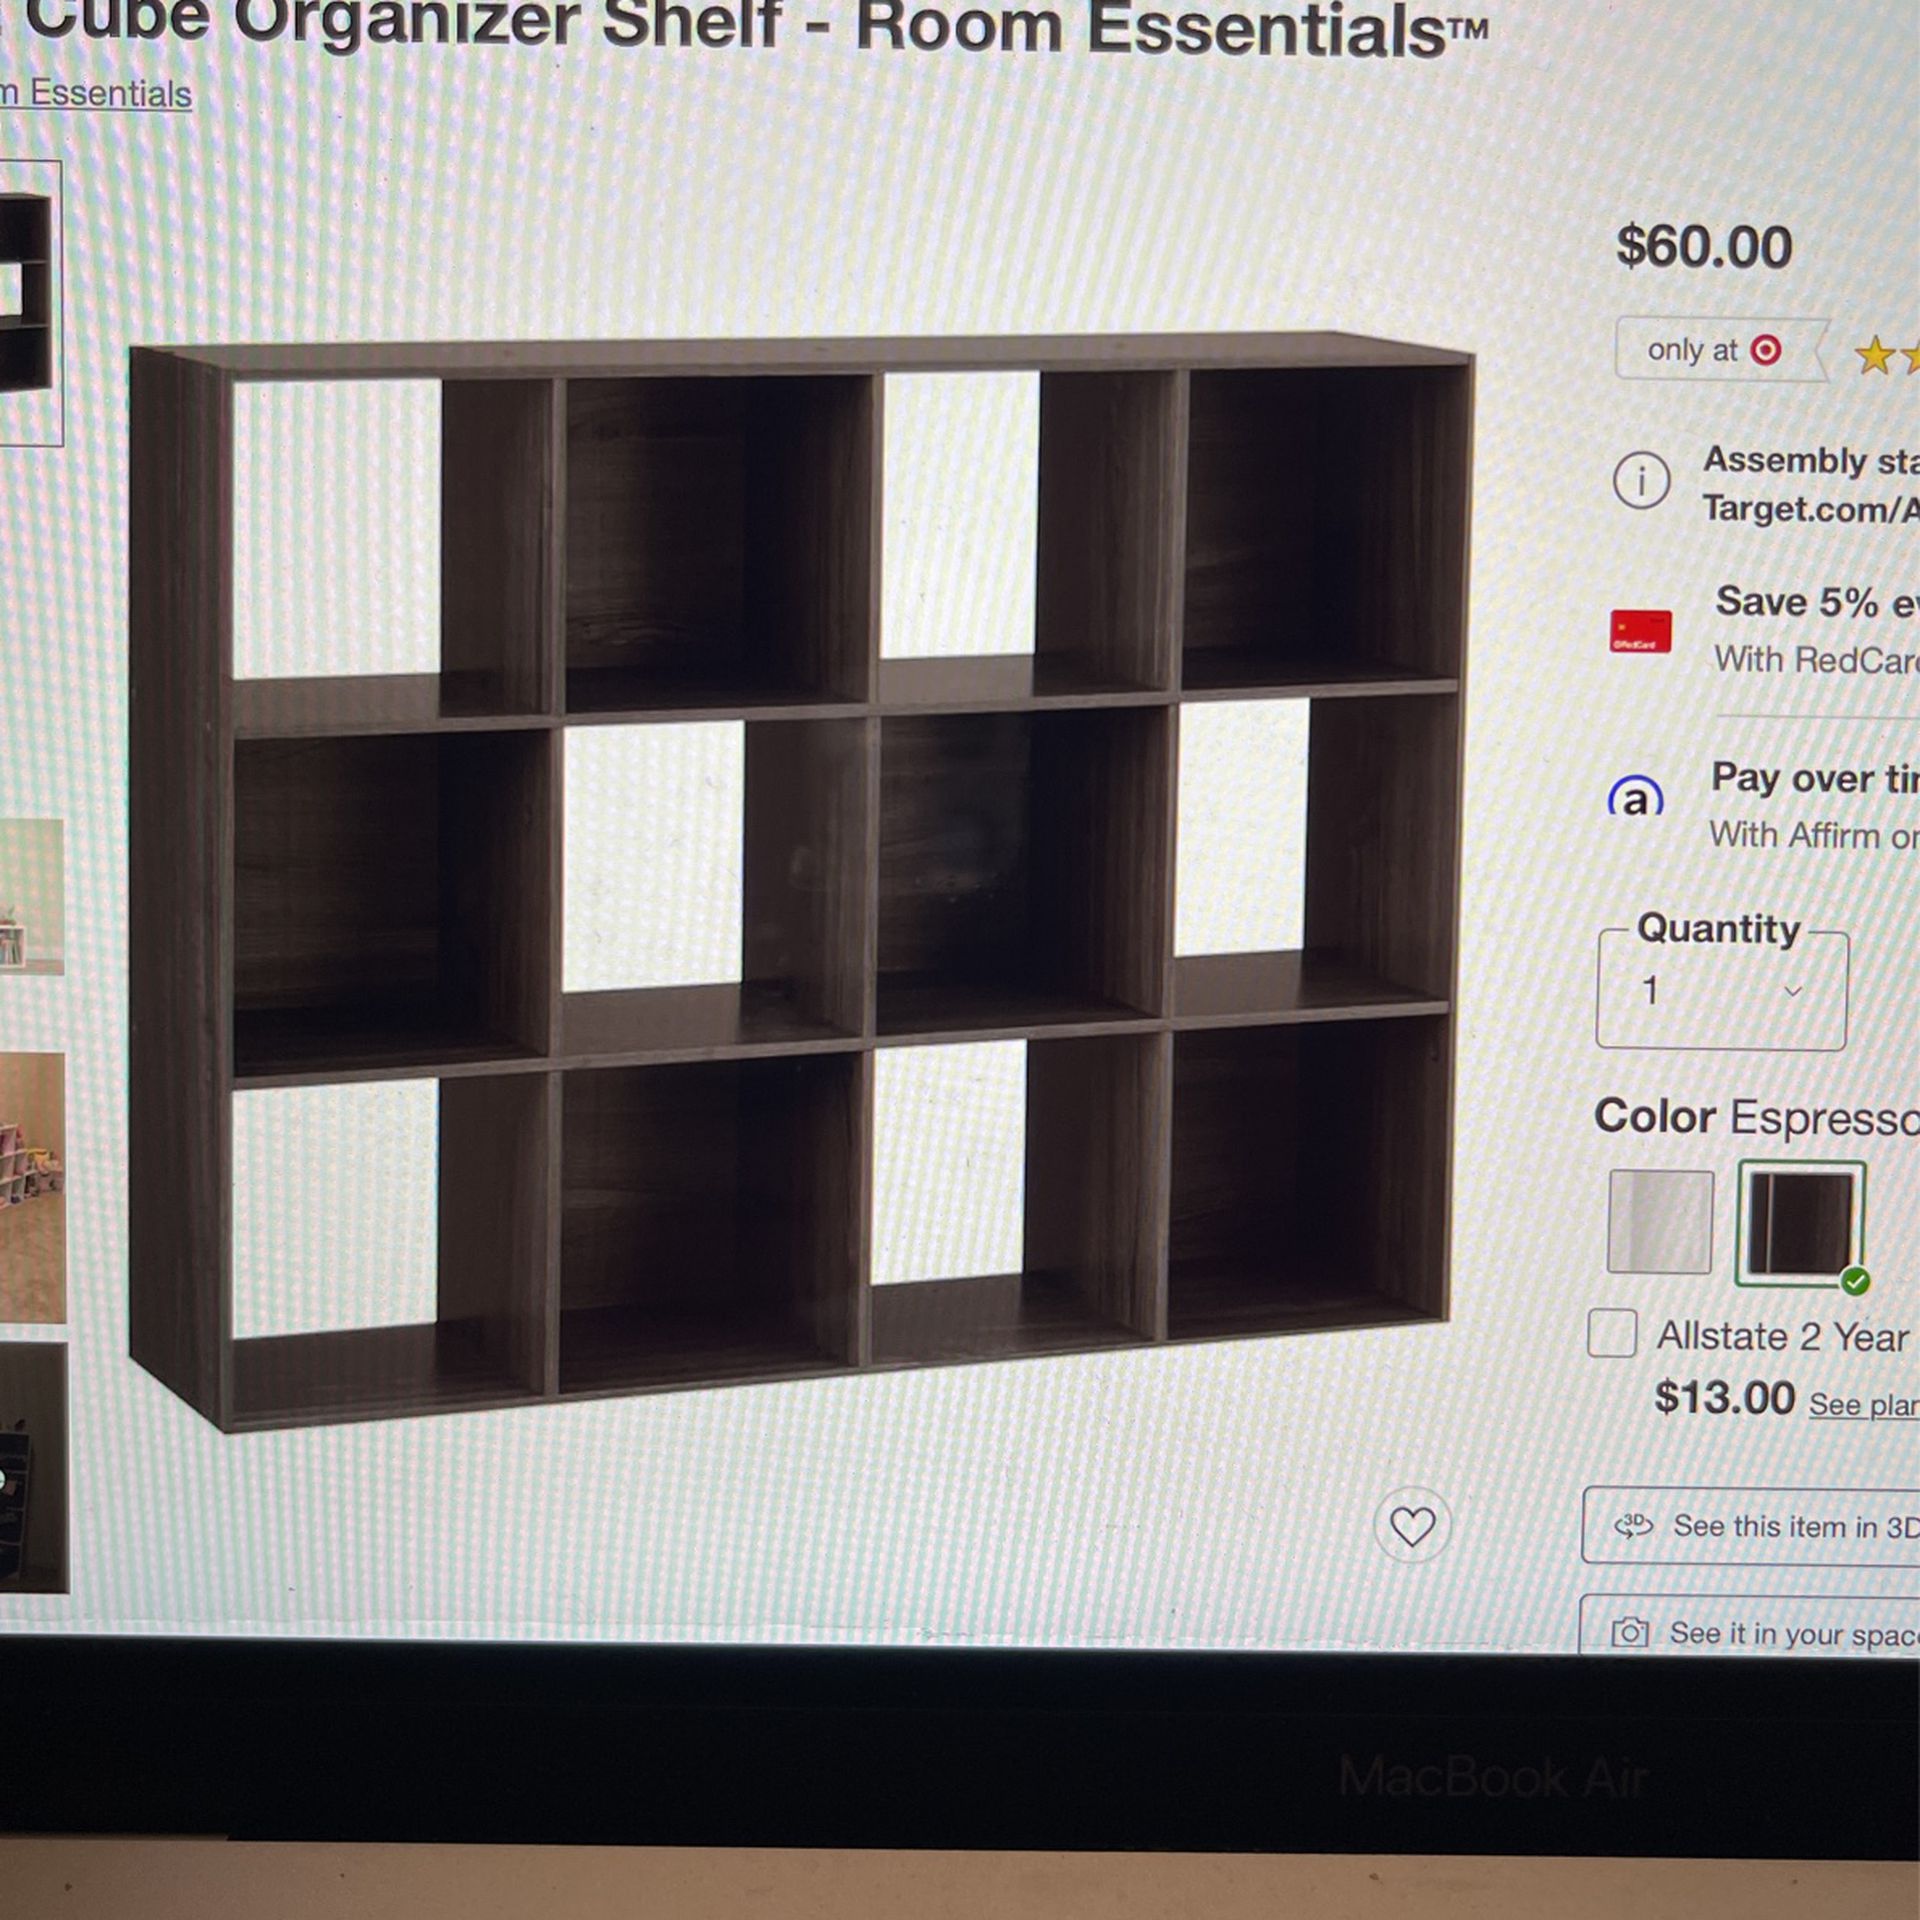 11” 12 Cube organizer Shelf 